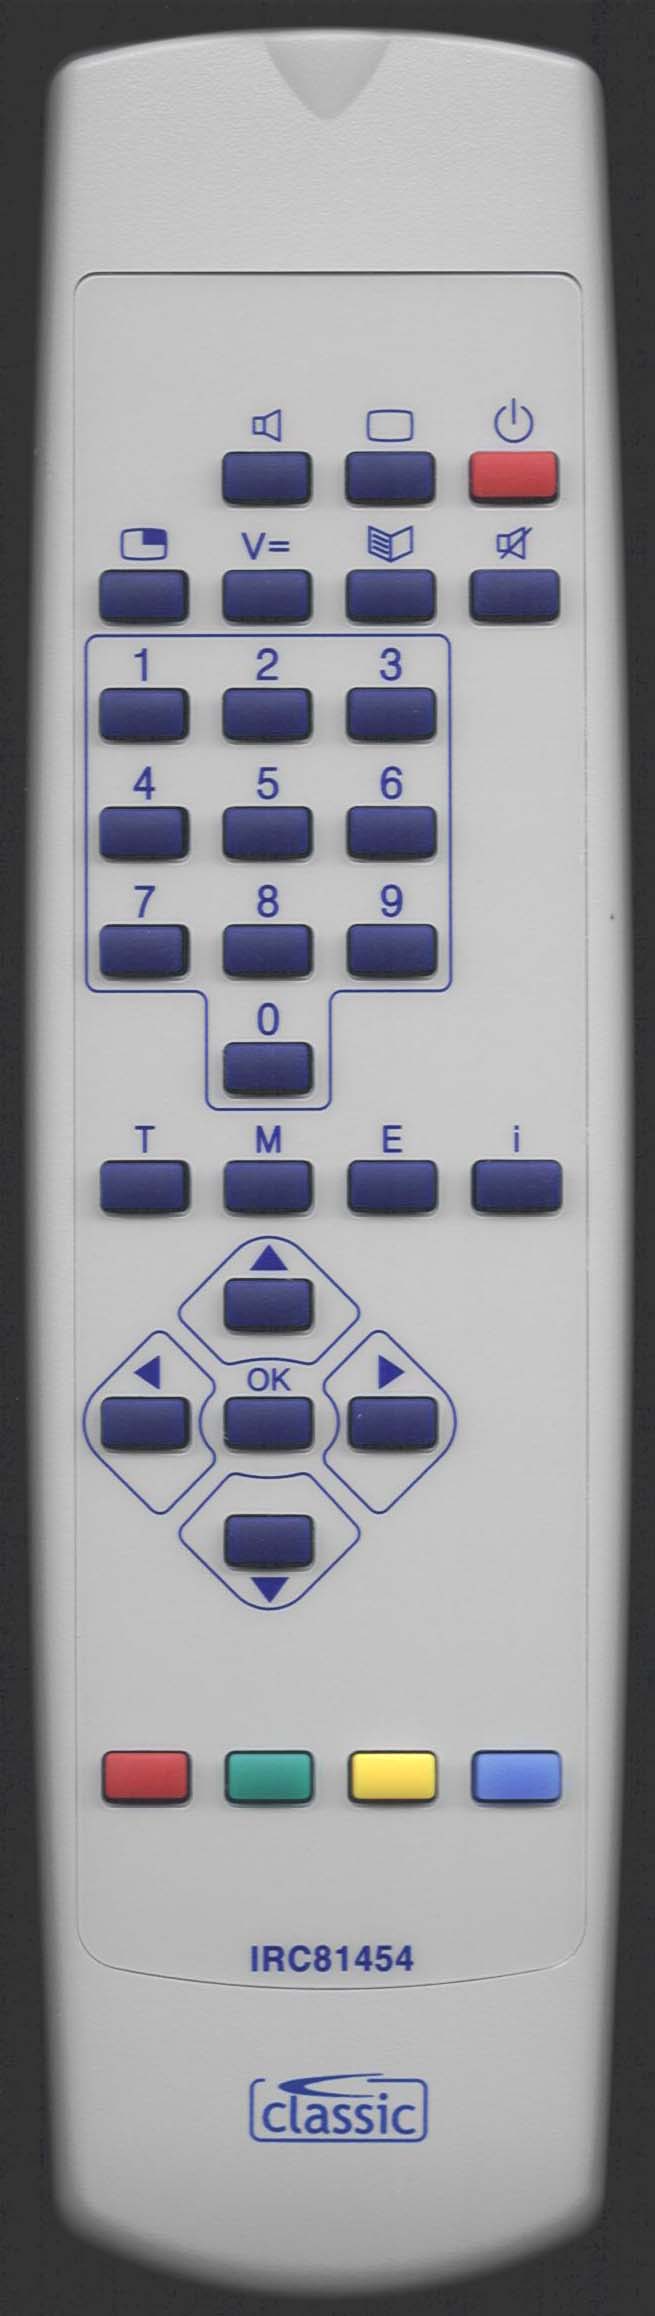 Loewe 87000 060 Remote Control